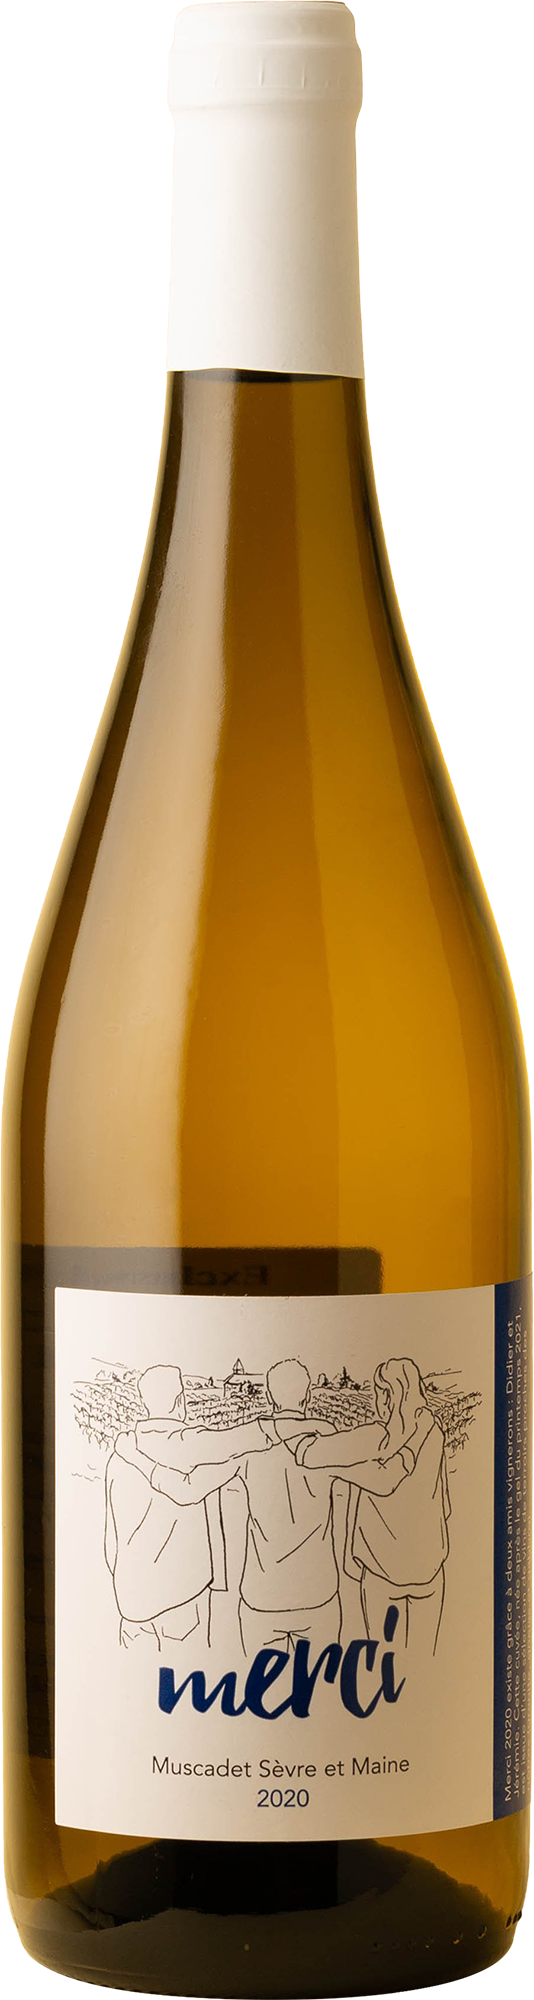 Domaine de la Pepiere - Muscadet Sevre et Maine Cuveé Merci Melon Blanc 2020 White Wine